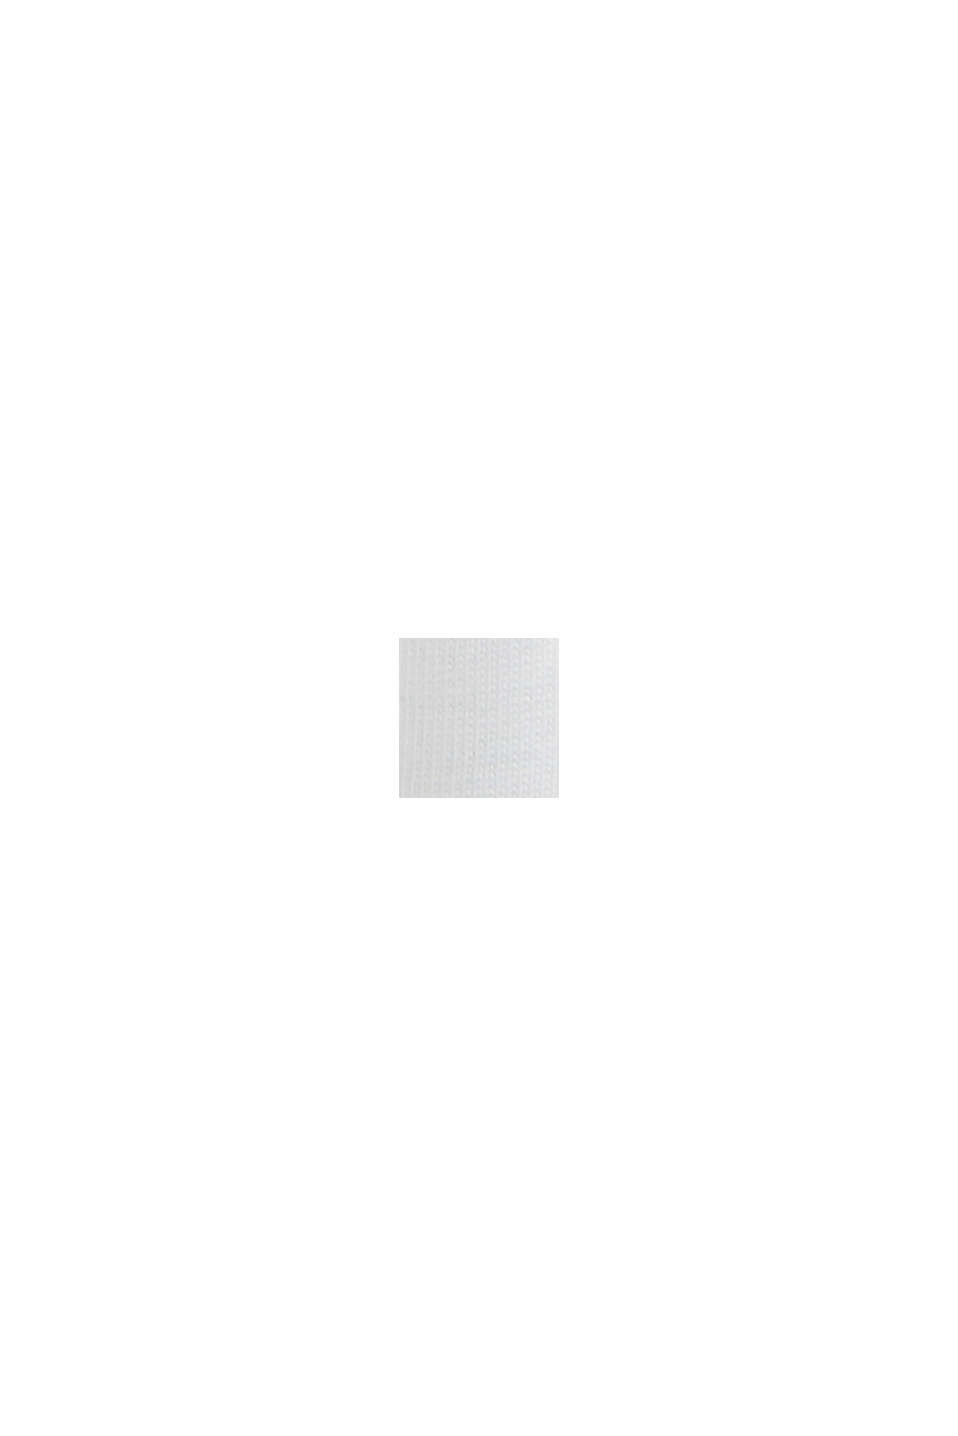 오가닉 코튼 소재의 아플리케 로고 티셔츠, WHITE, swatch